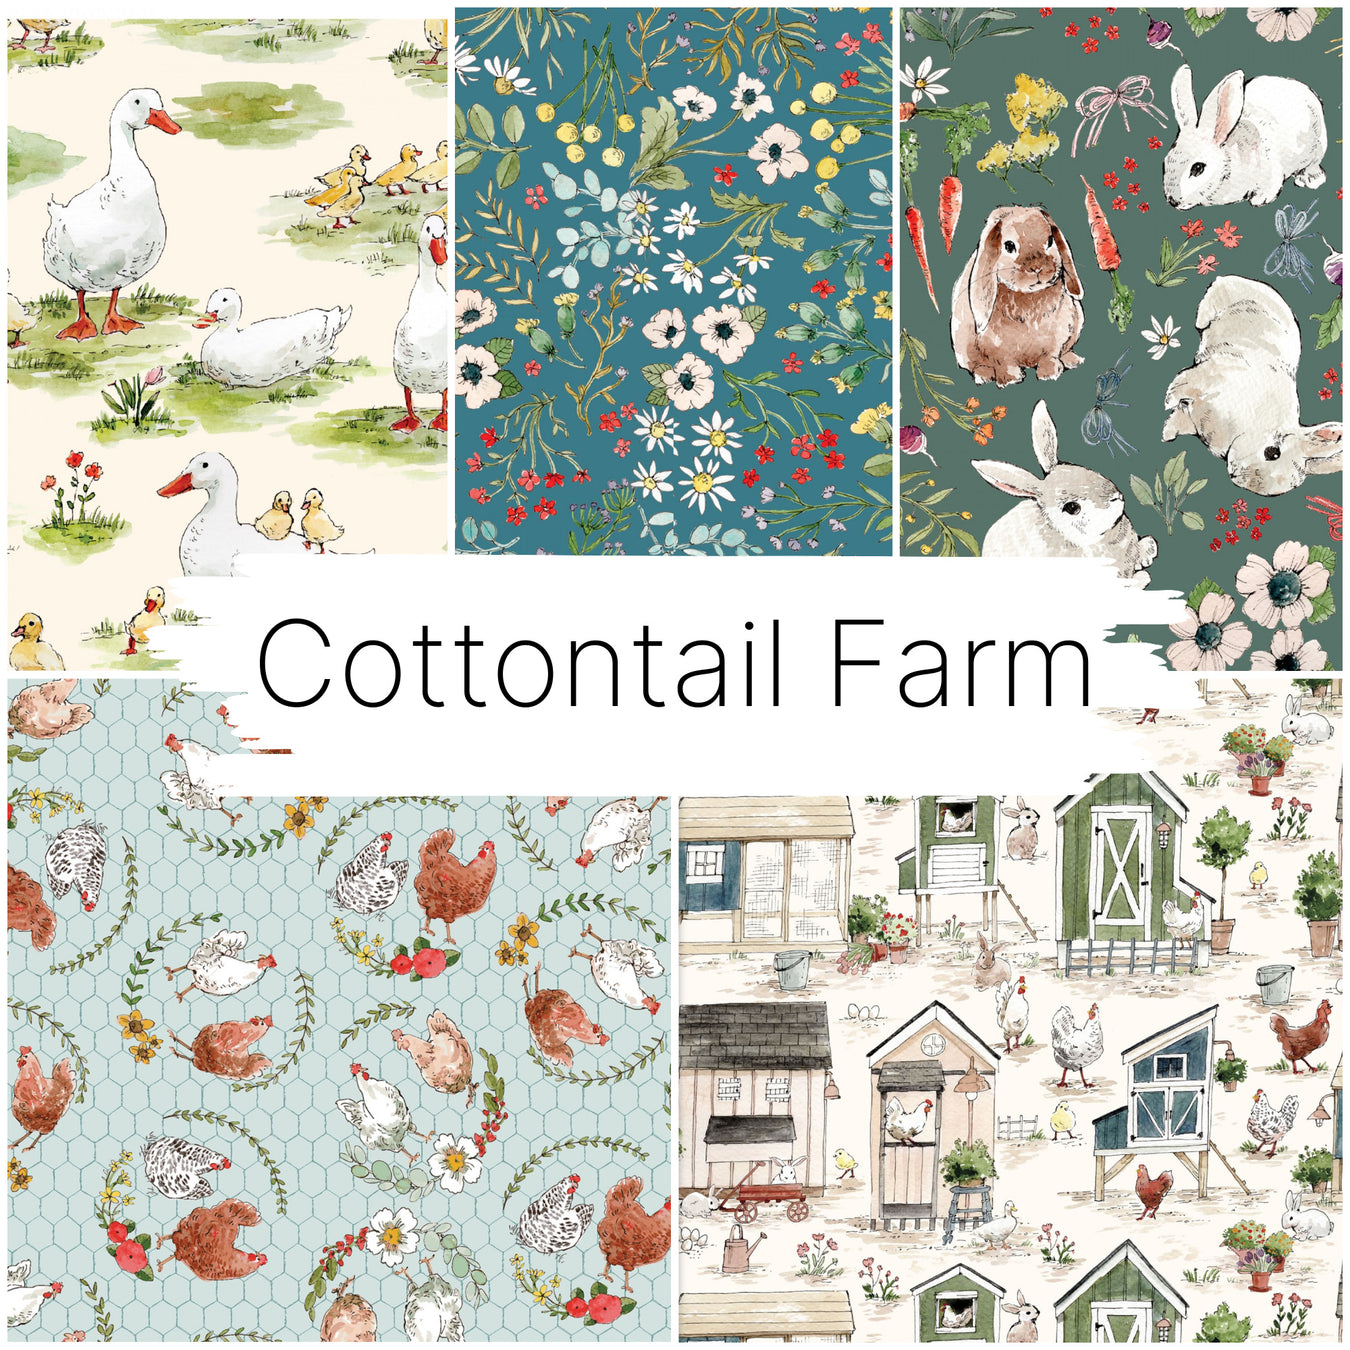 Cottontail Farm